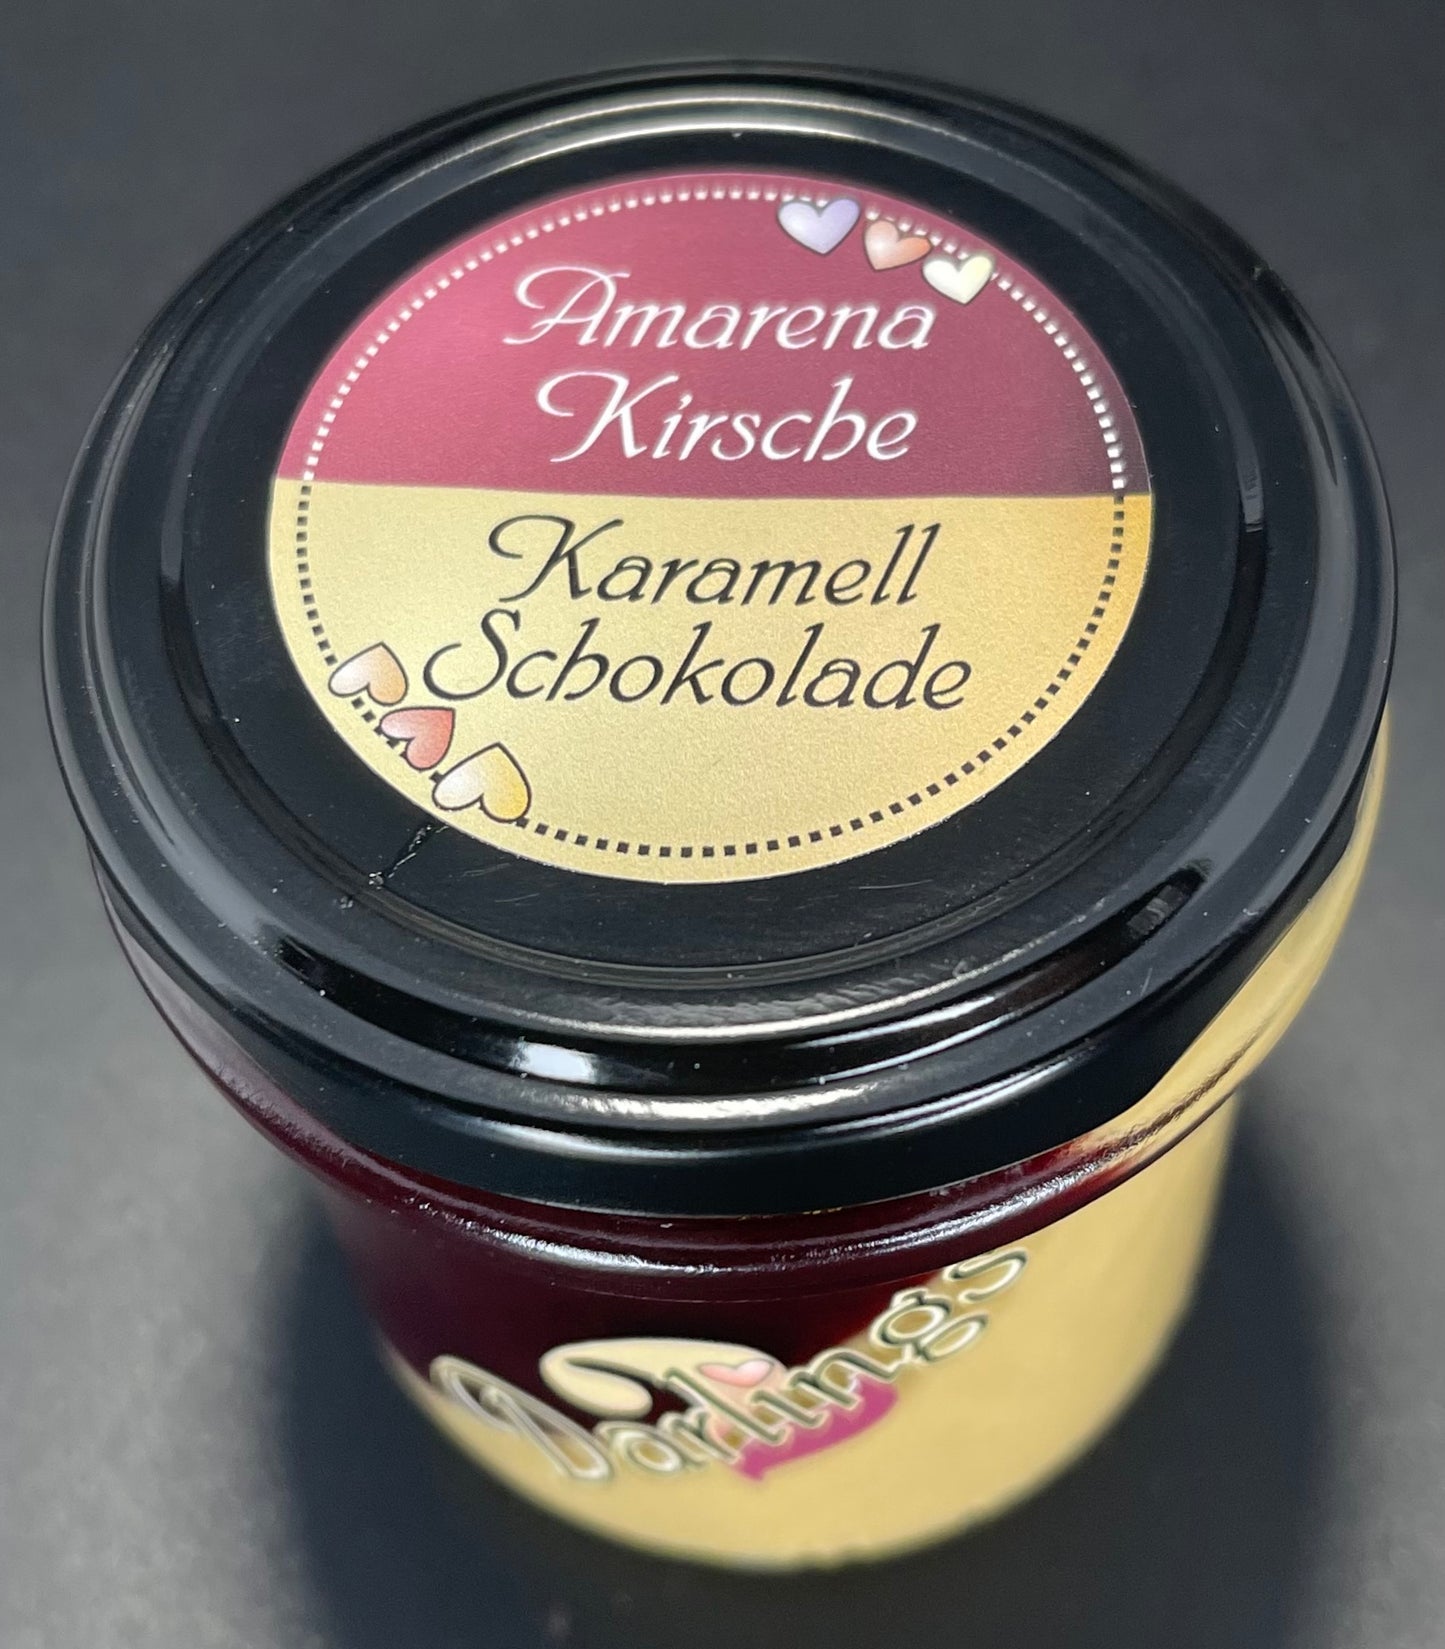 AmarenaKirsche - Karamellschokolade